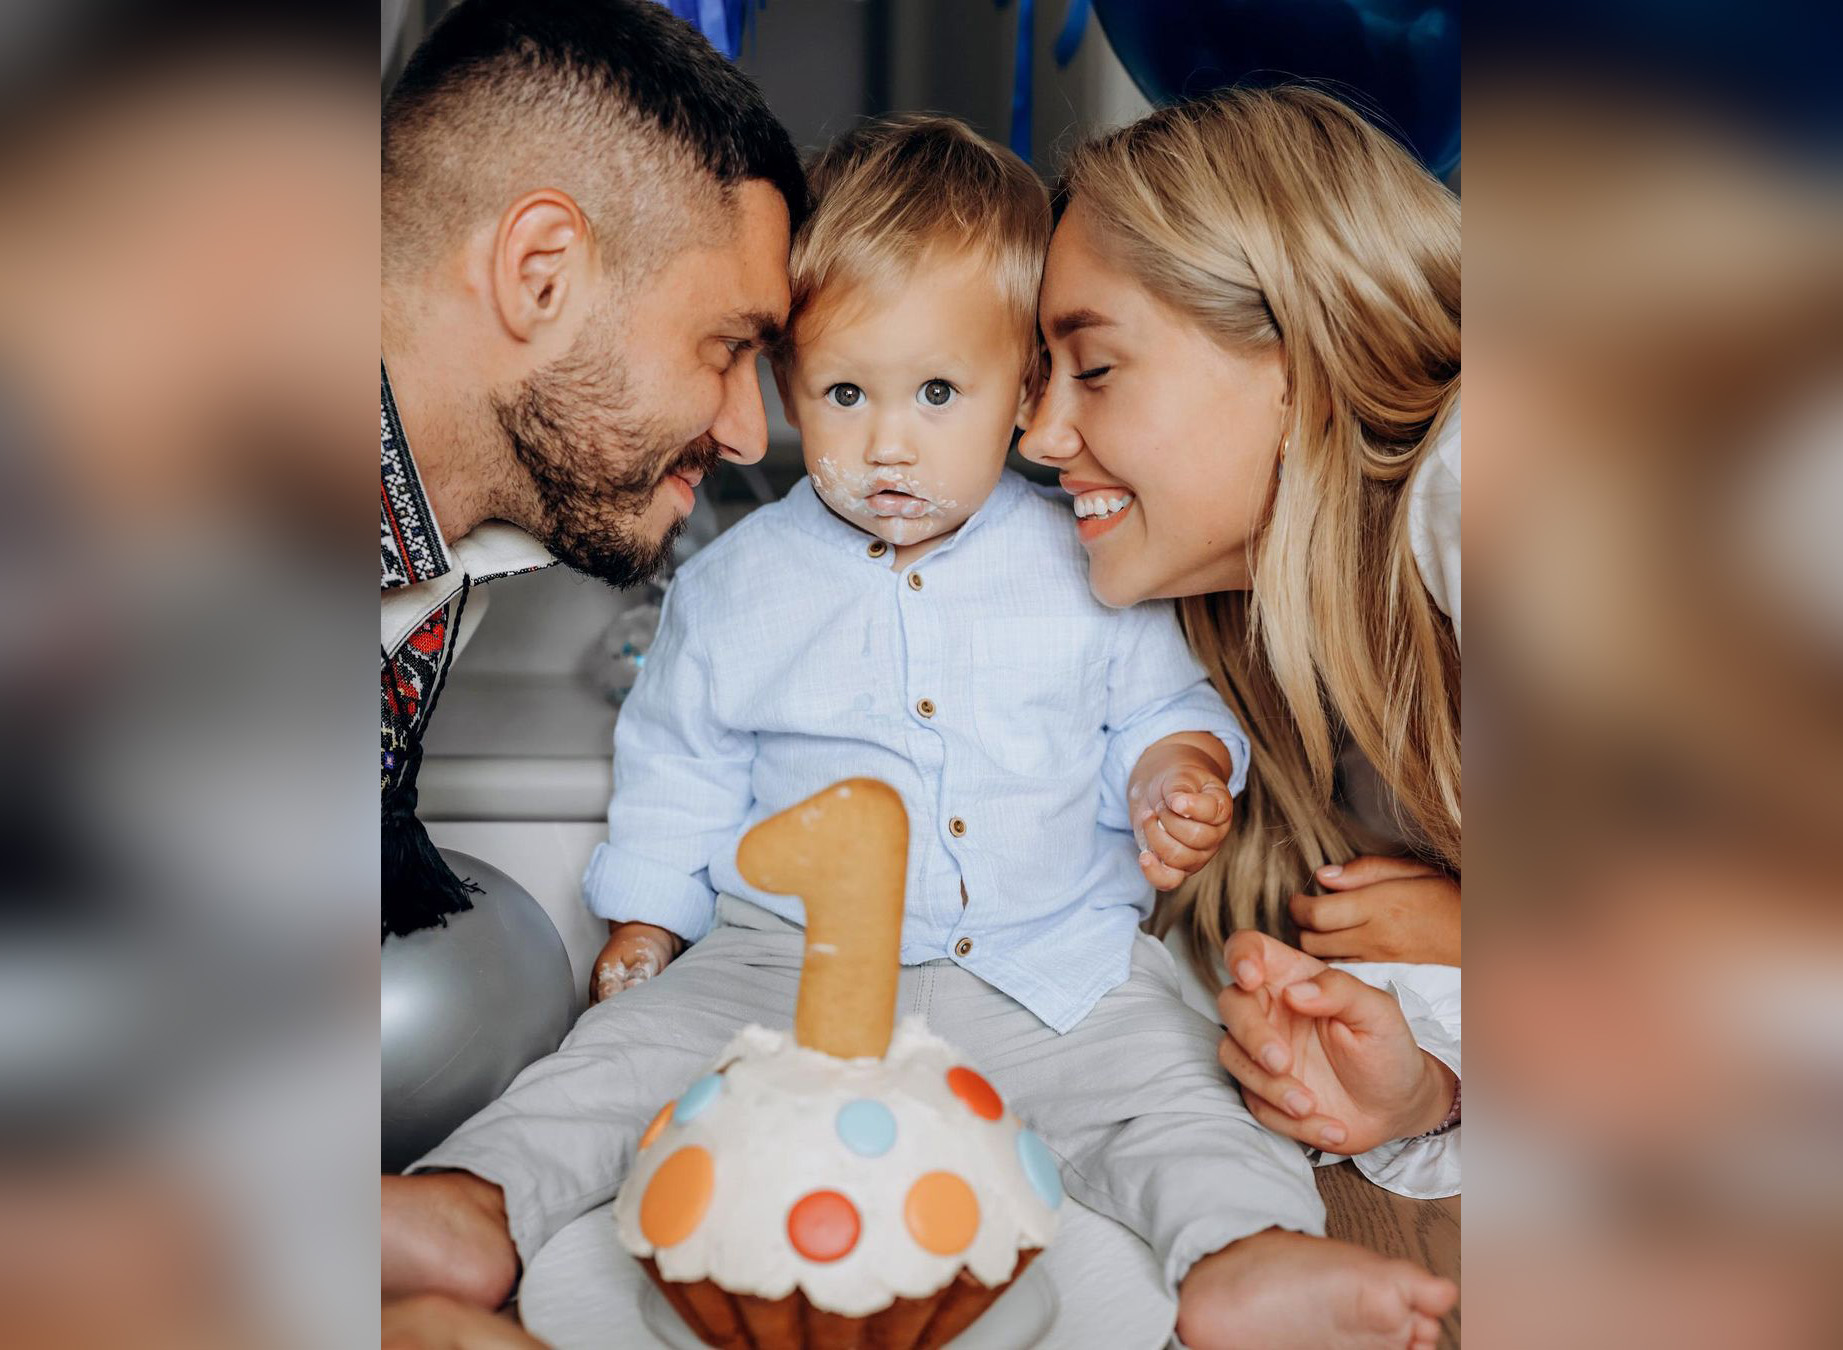 Никита Добрынин и Даша Квиткова отмечают день рождения сына. Фото: Instagram.com/nikitadobrynin/